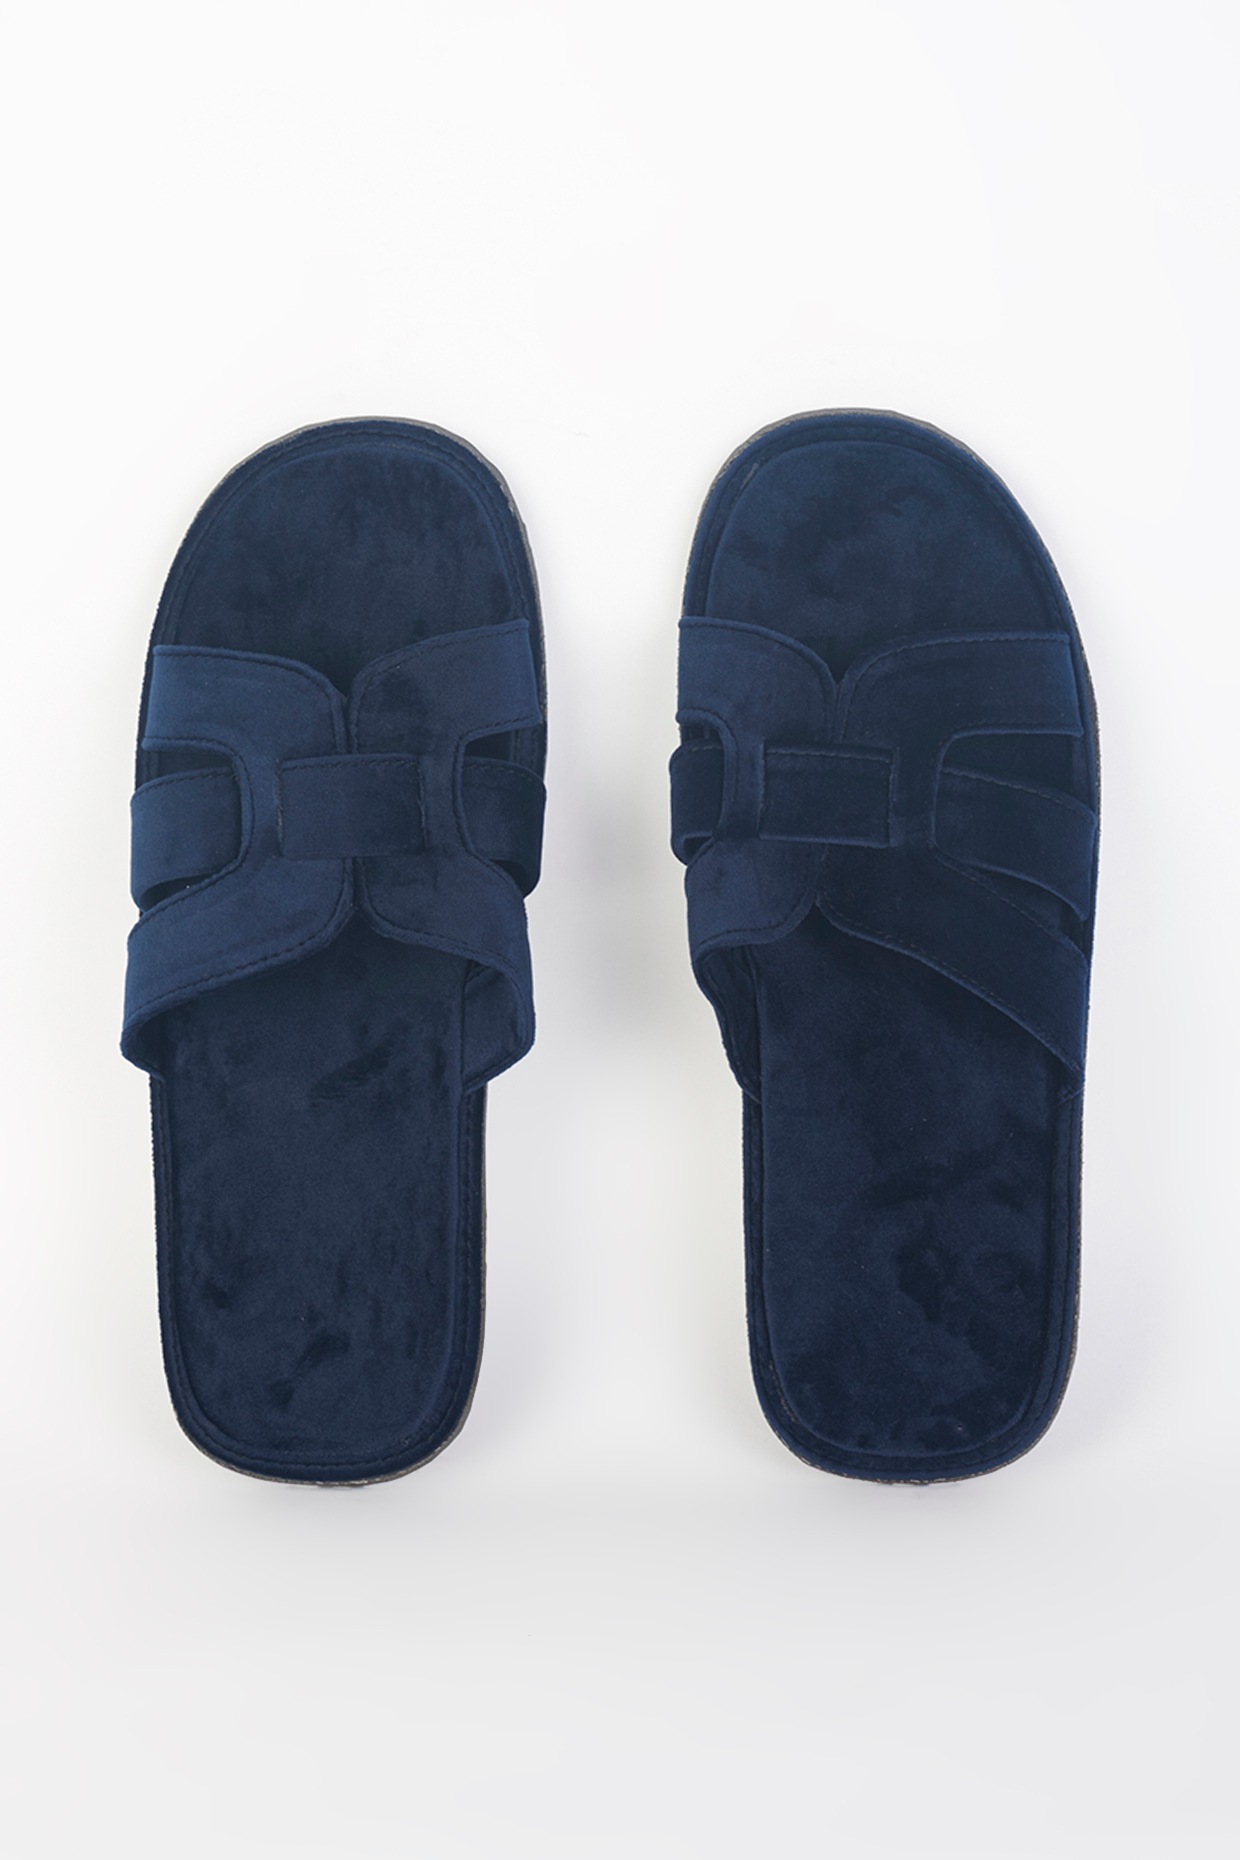 Buy Blue Handcrafted Velvet Shoes For Men Online at Jayporecom